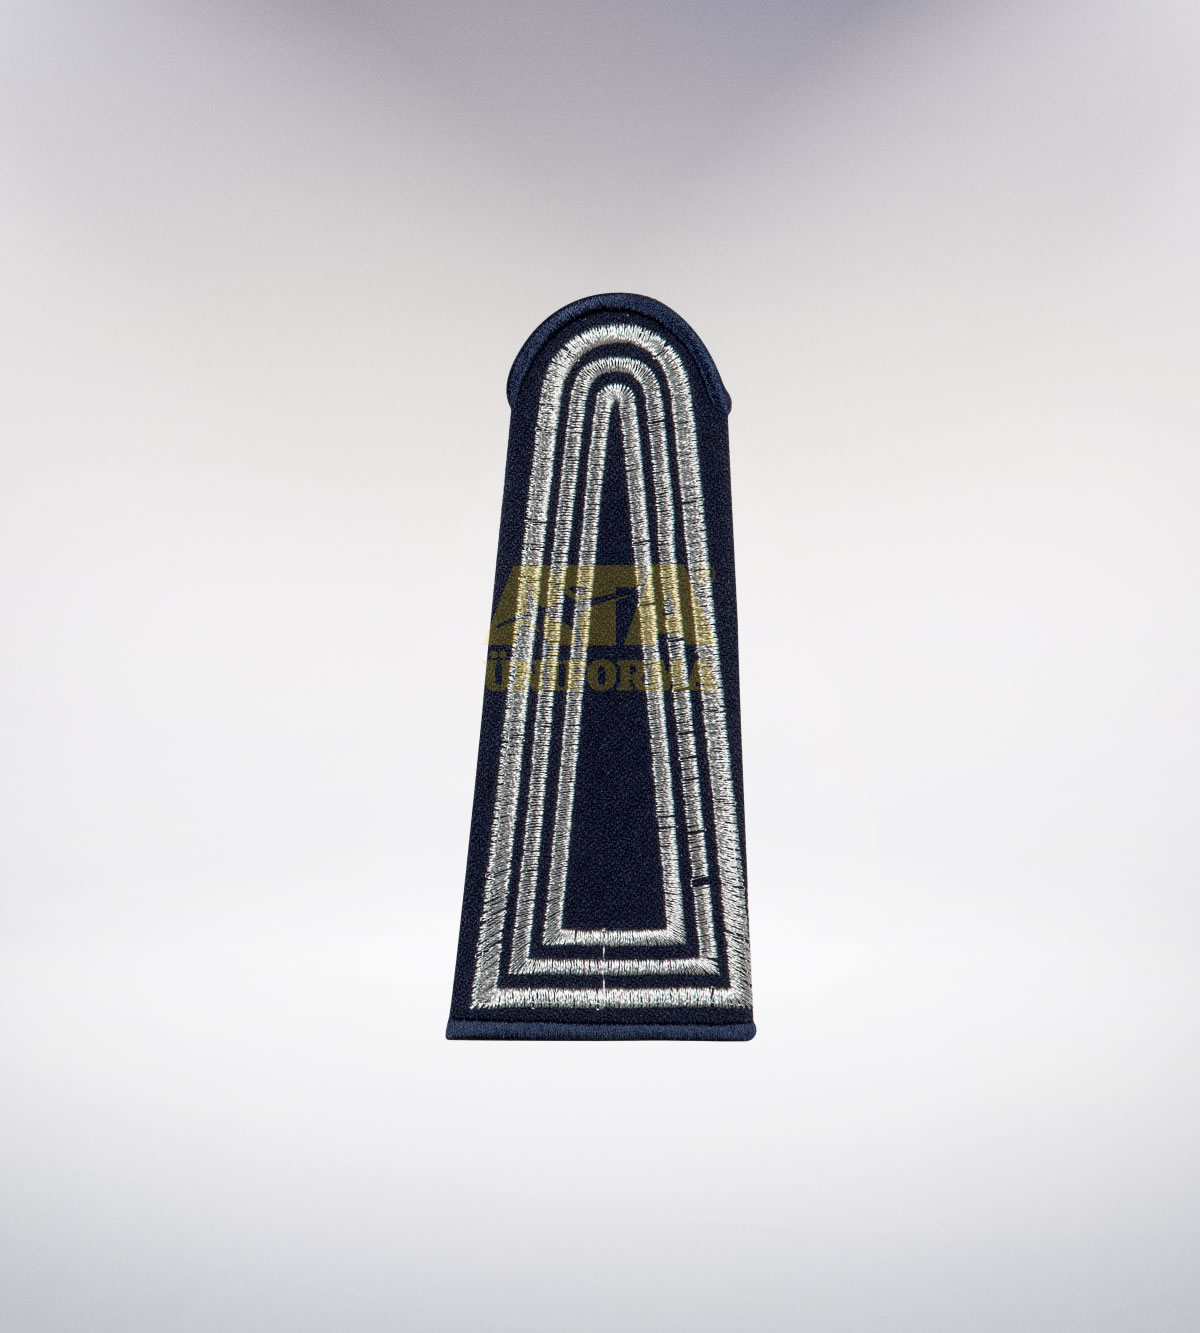 ATA 202 - Zabıta tören takımı - zabıta elbiseleri | zabıta üniformaları | zabıta kıyafetleri 